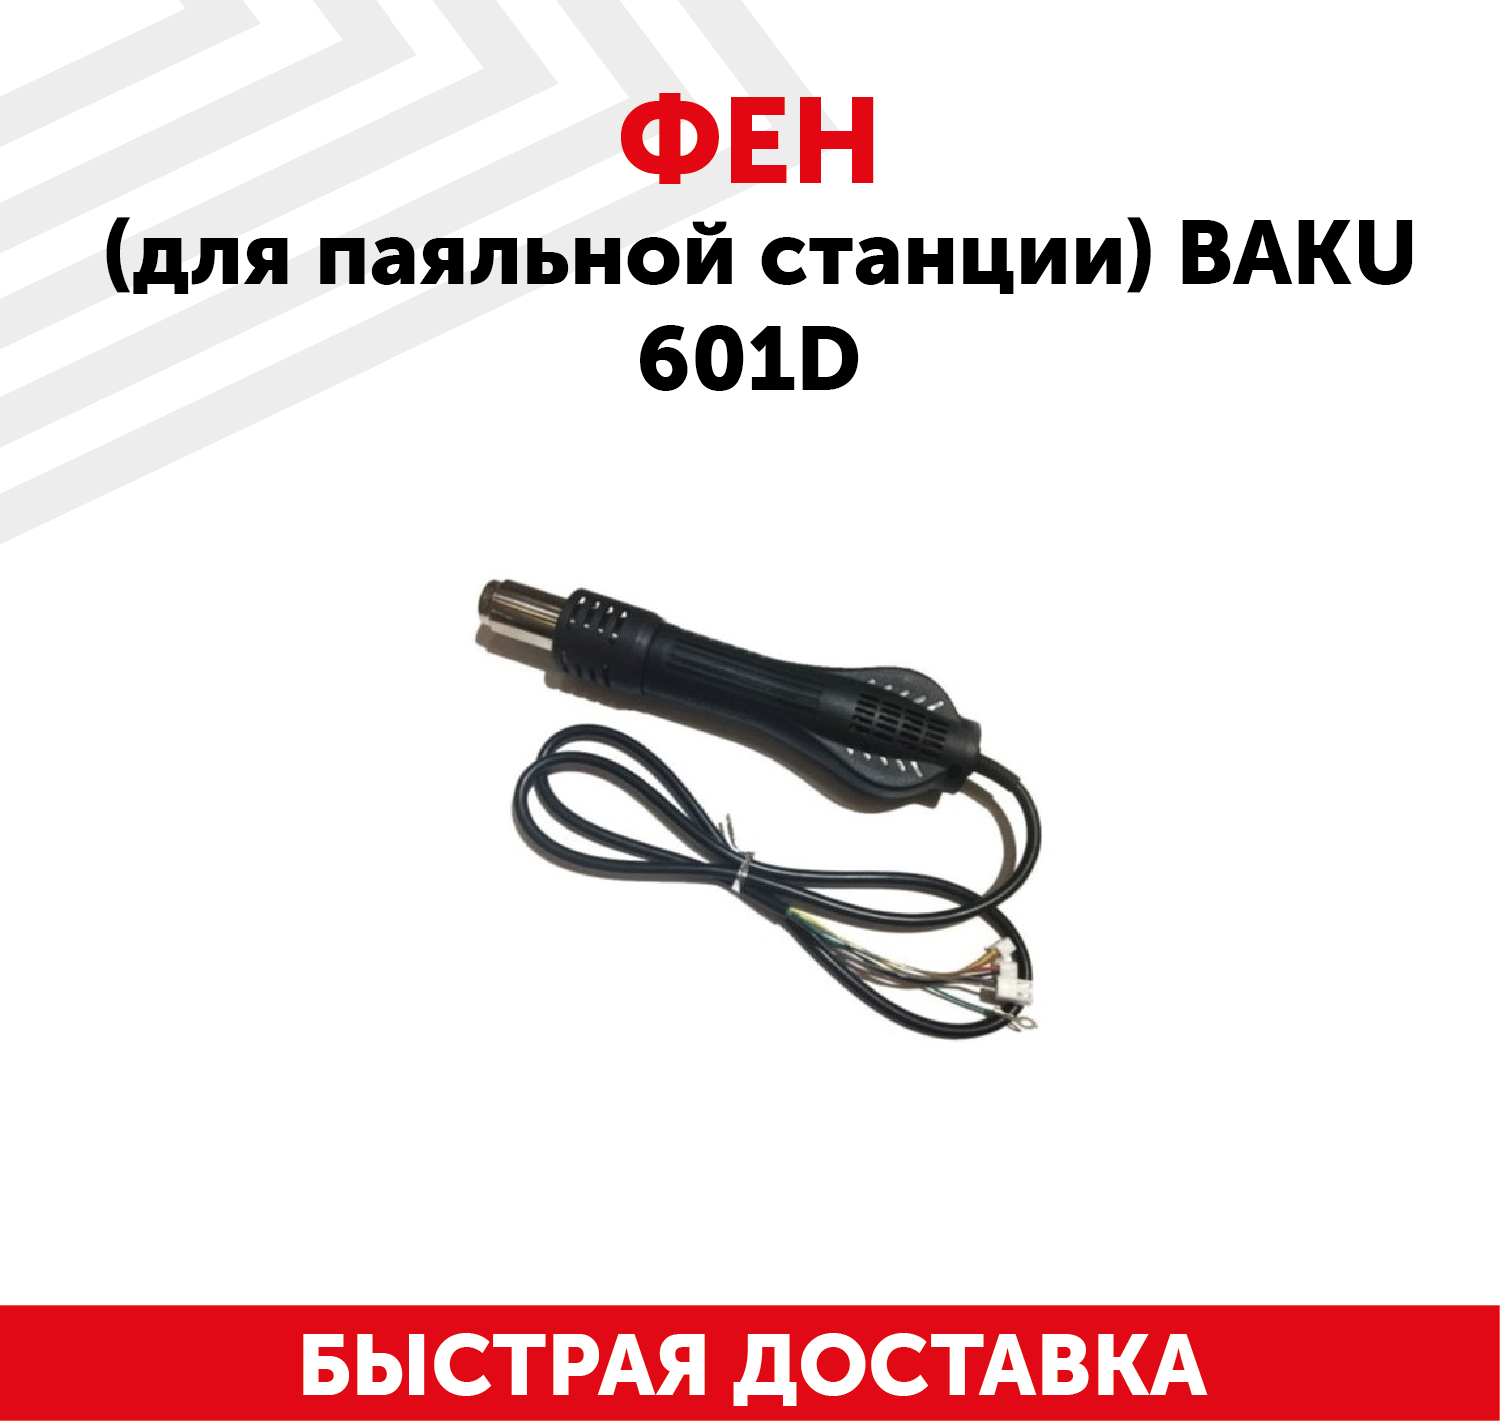 Фен (термофен, термовоздушный фен) для паяльной станции Baku 601D